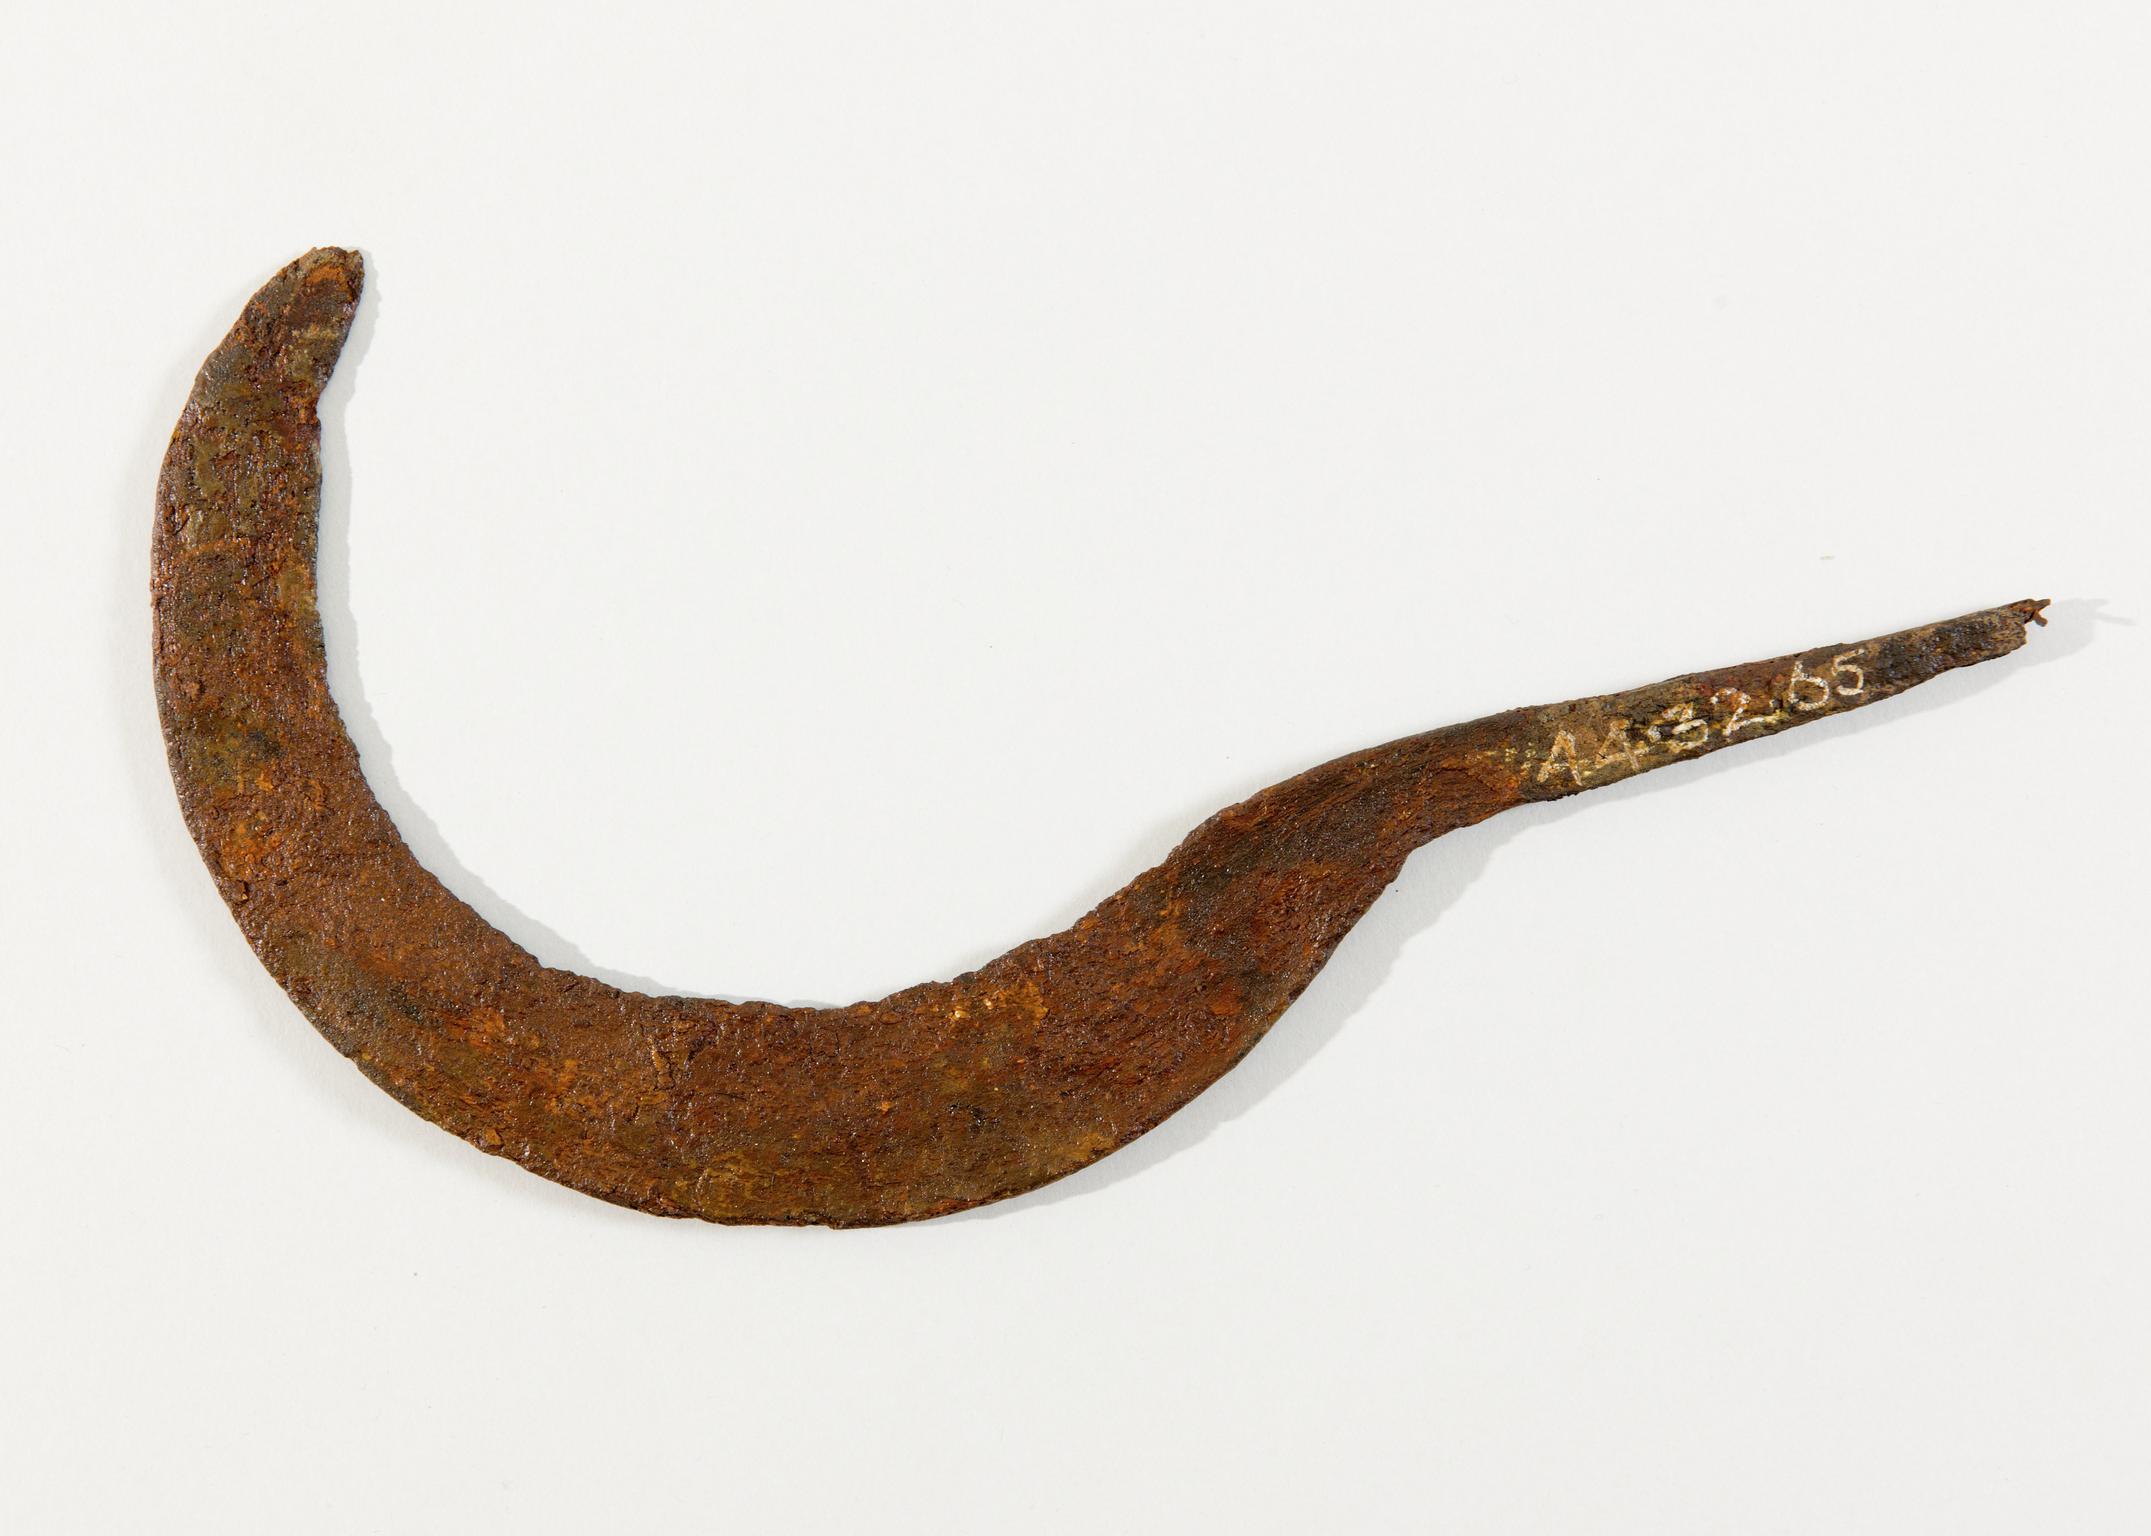 Iron Age iron sickle